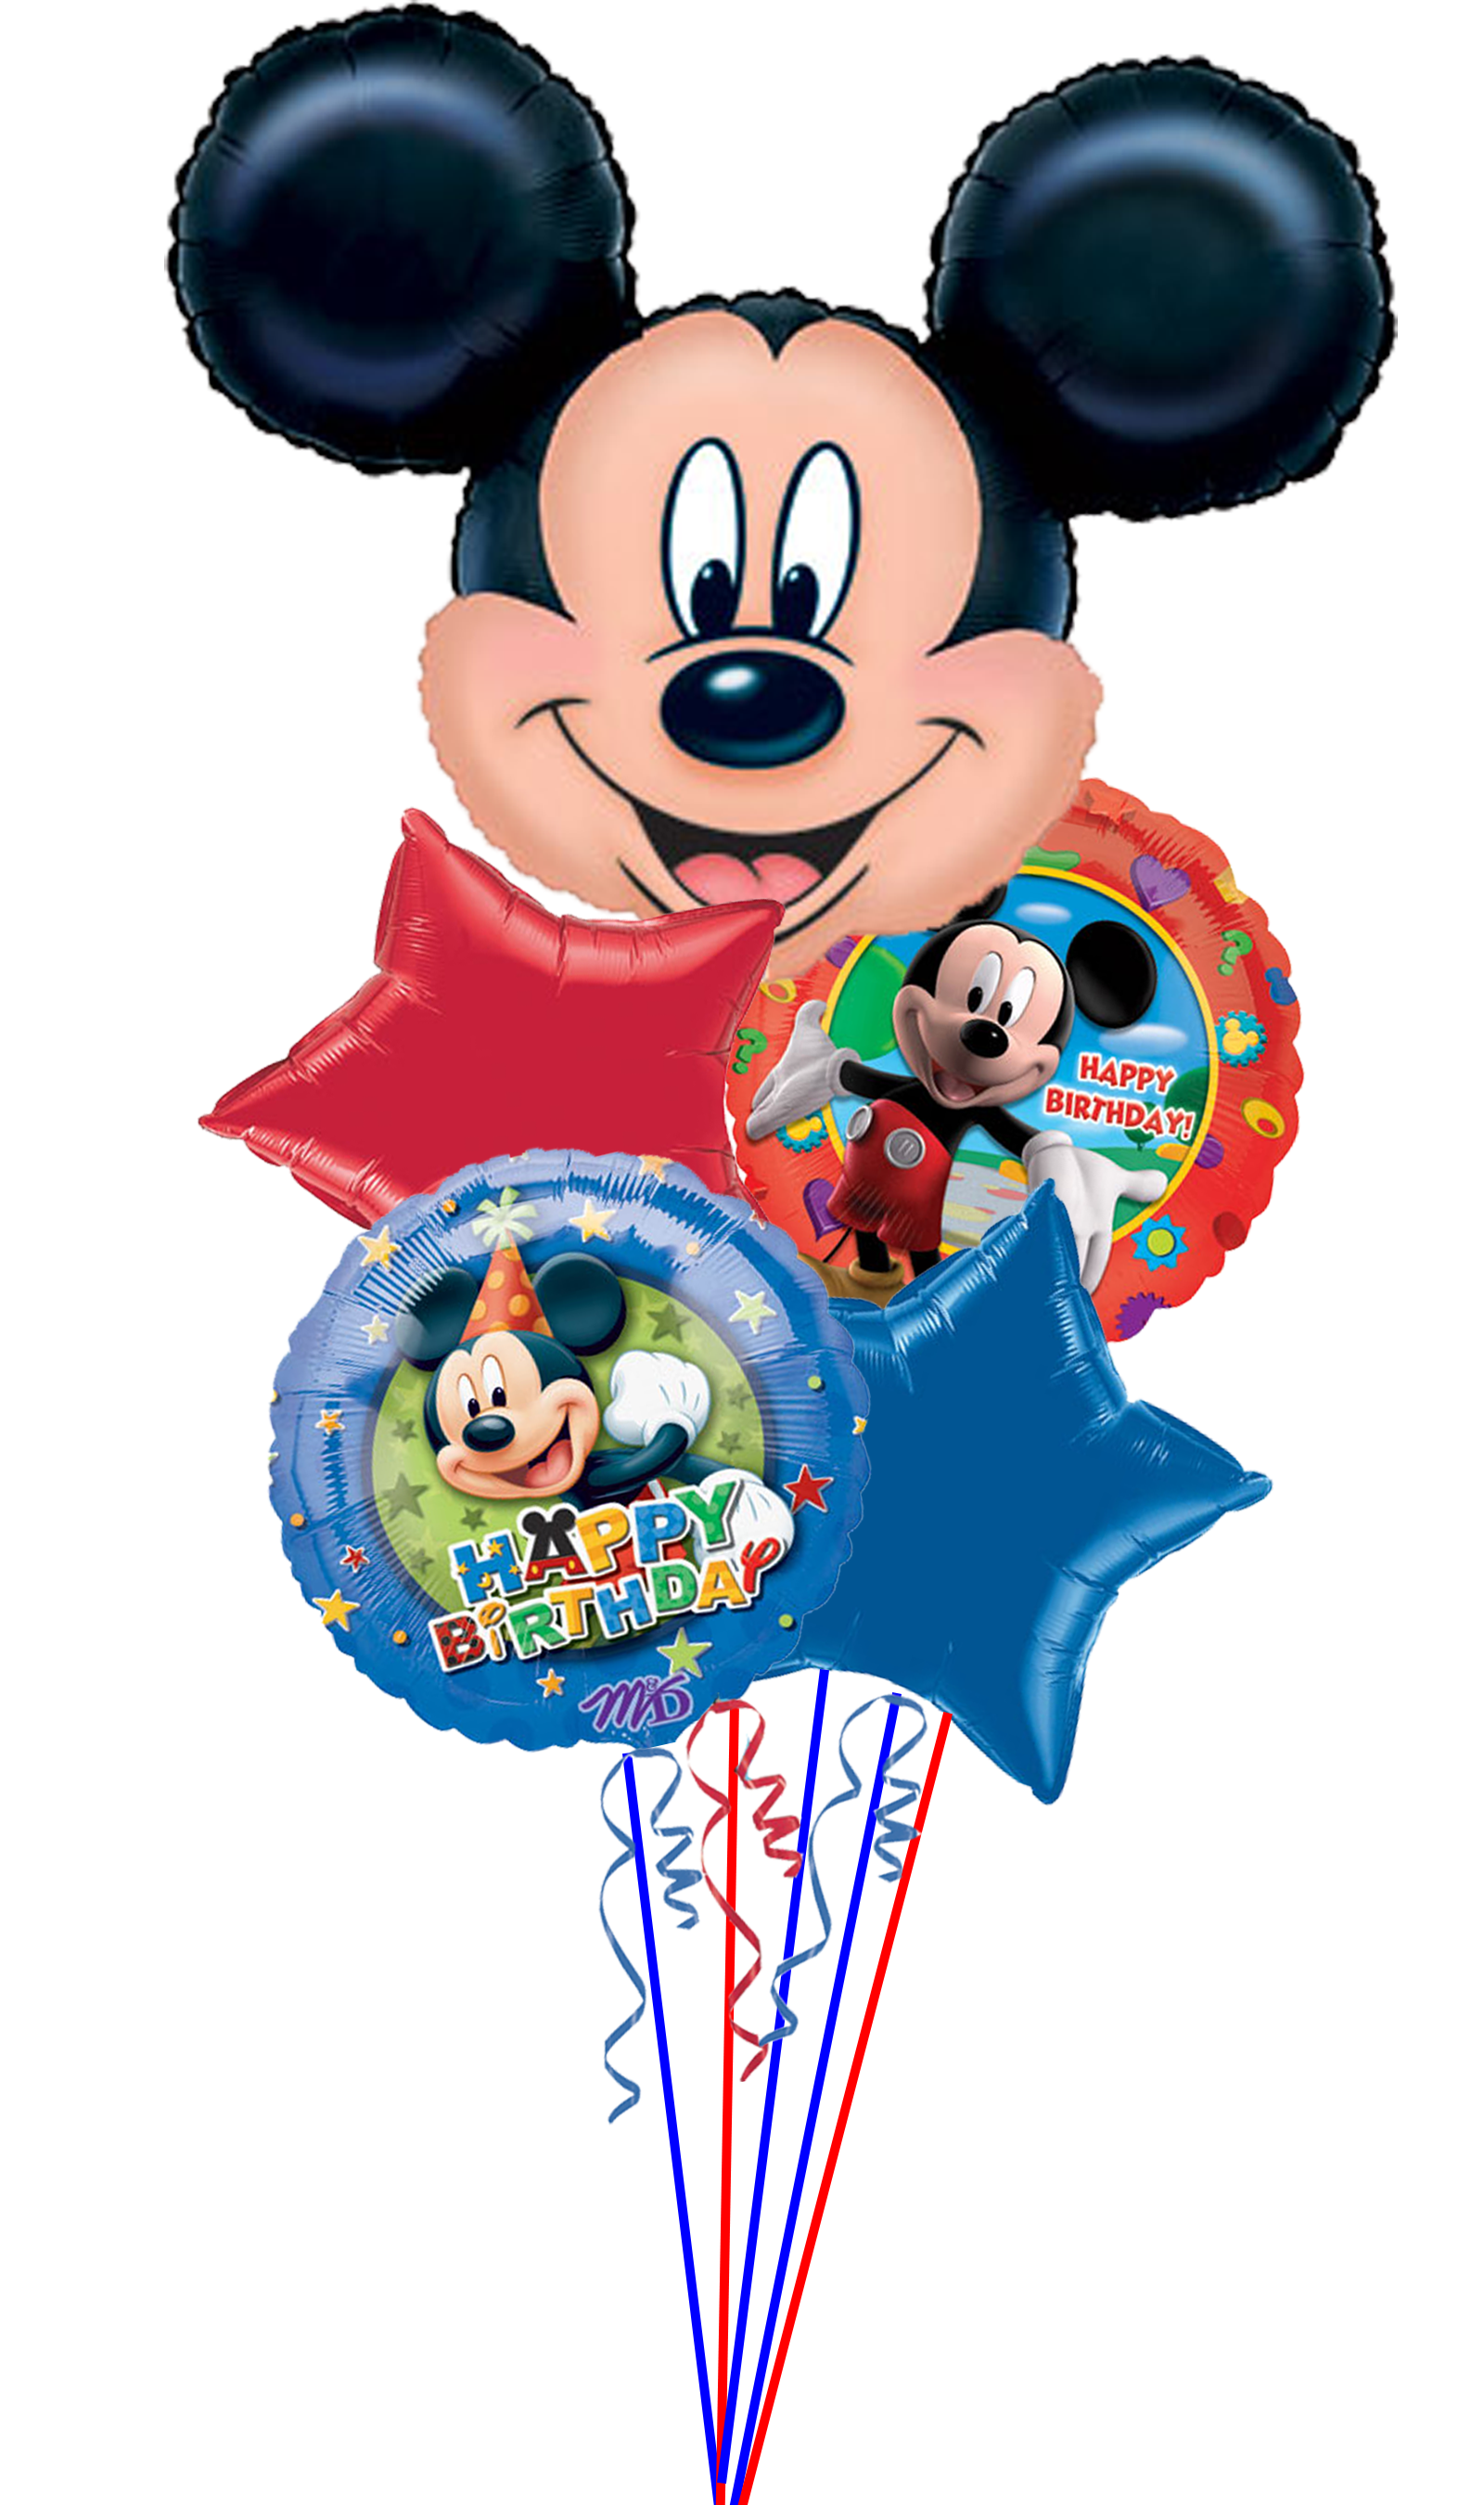 Uitgaan van ik ga akkoord met Wat is er mis Mickey 5 Balloon Centerpiece/Bouquet